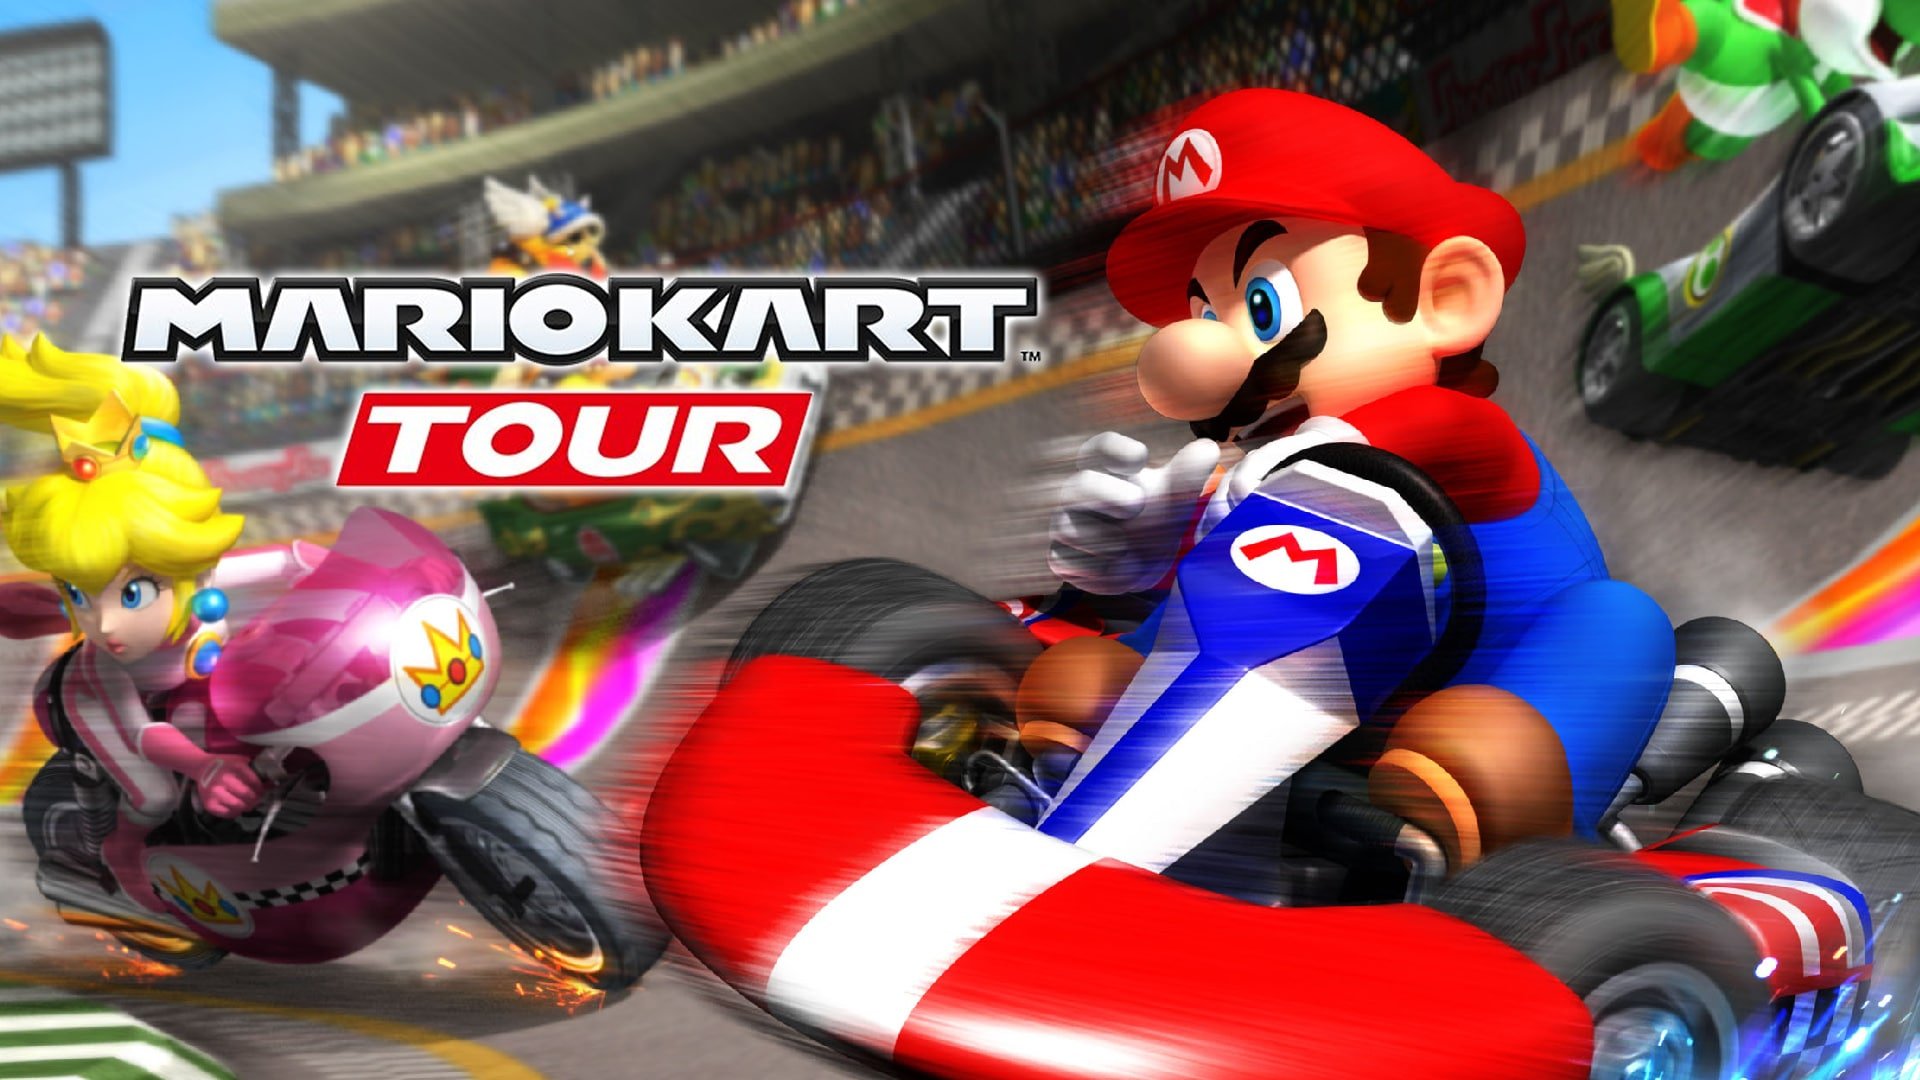 Mario Kart Tour (iOS / Android) is free-to-start